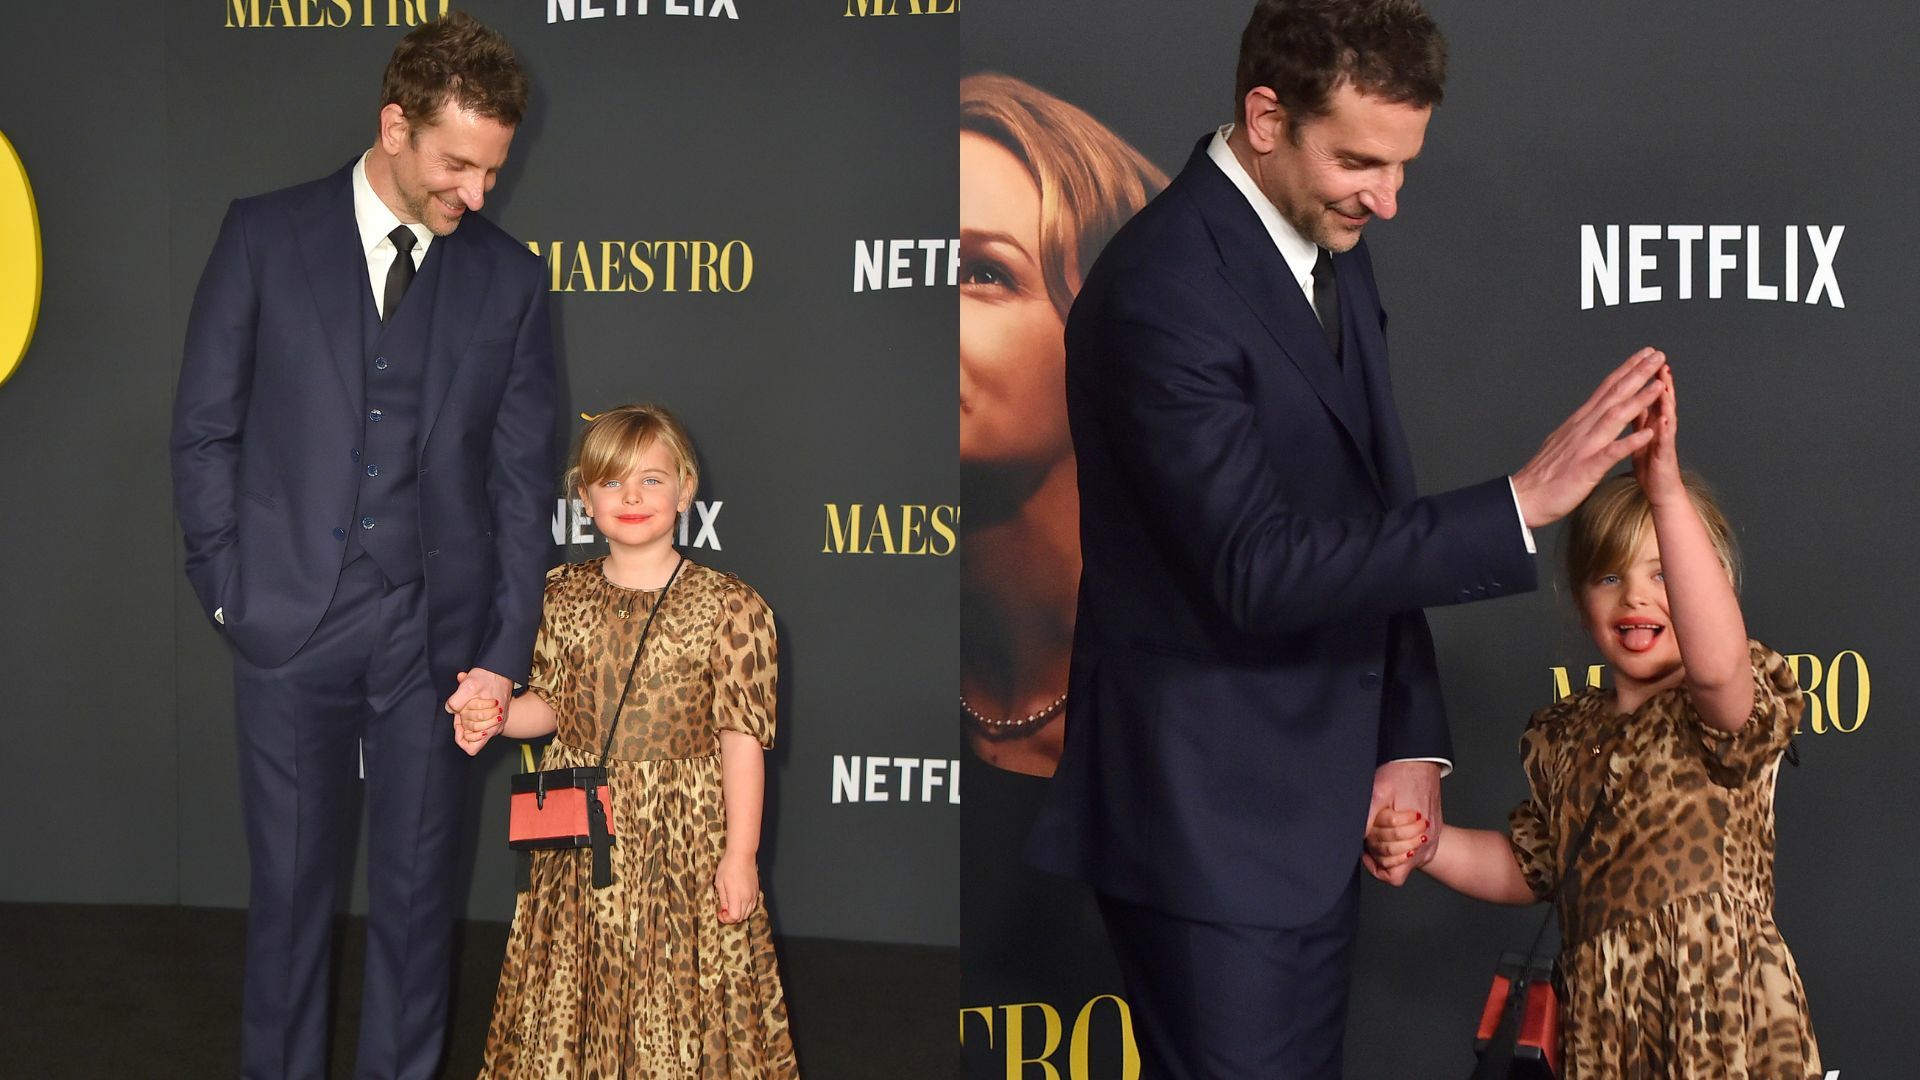 Bradley Cooper protagoniza tierno momento junto a su hija en alfombra roja de la película Maestro